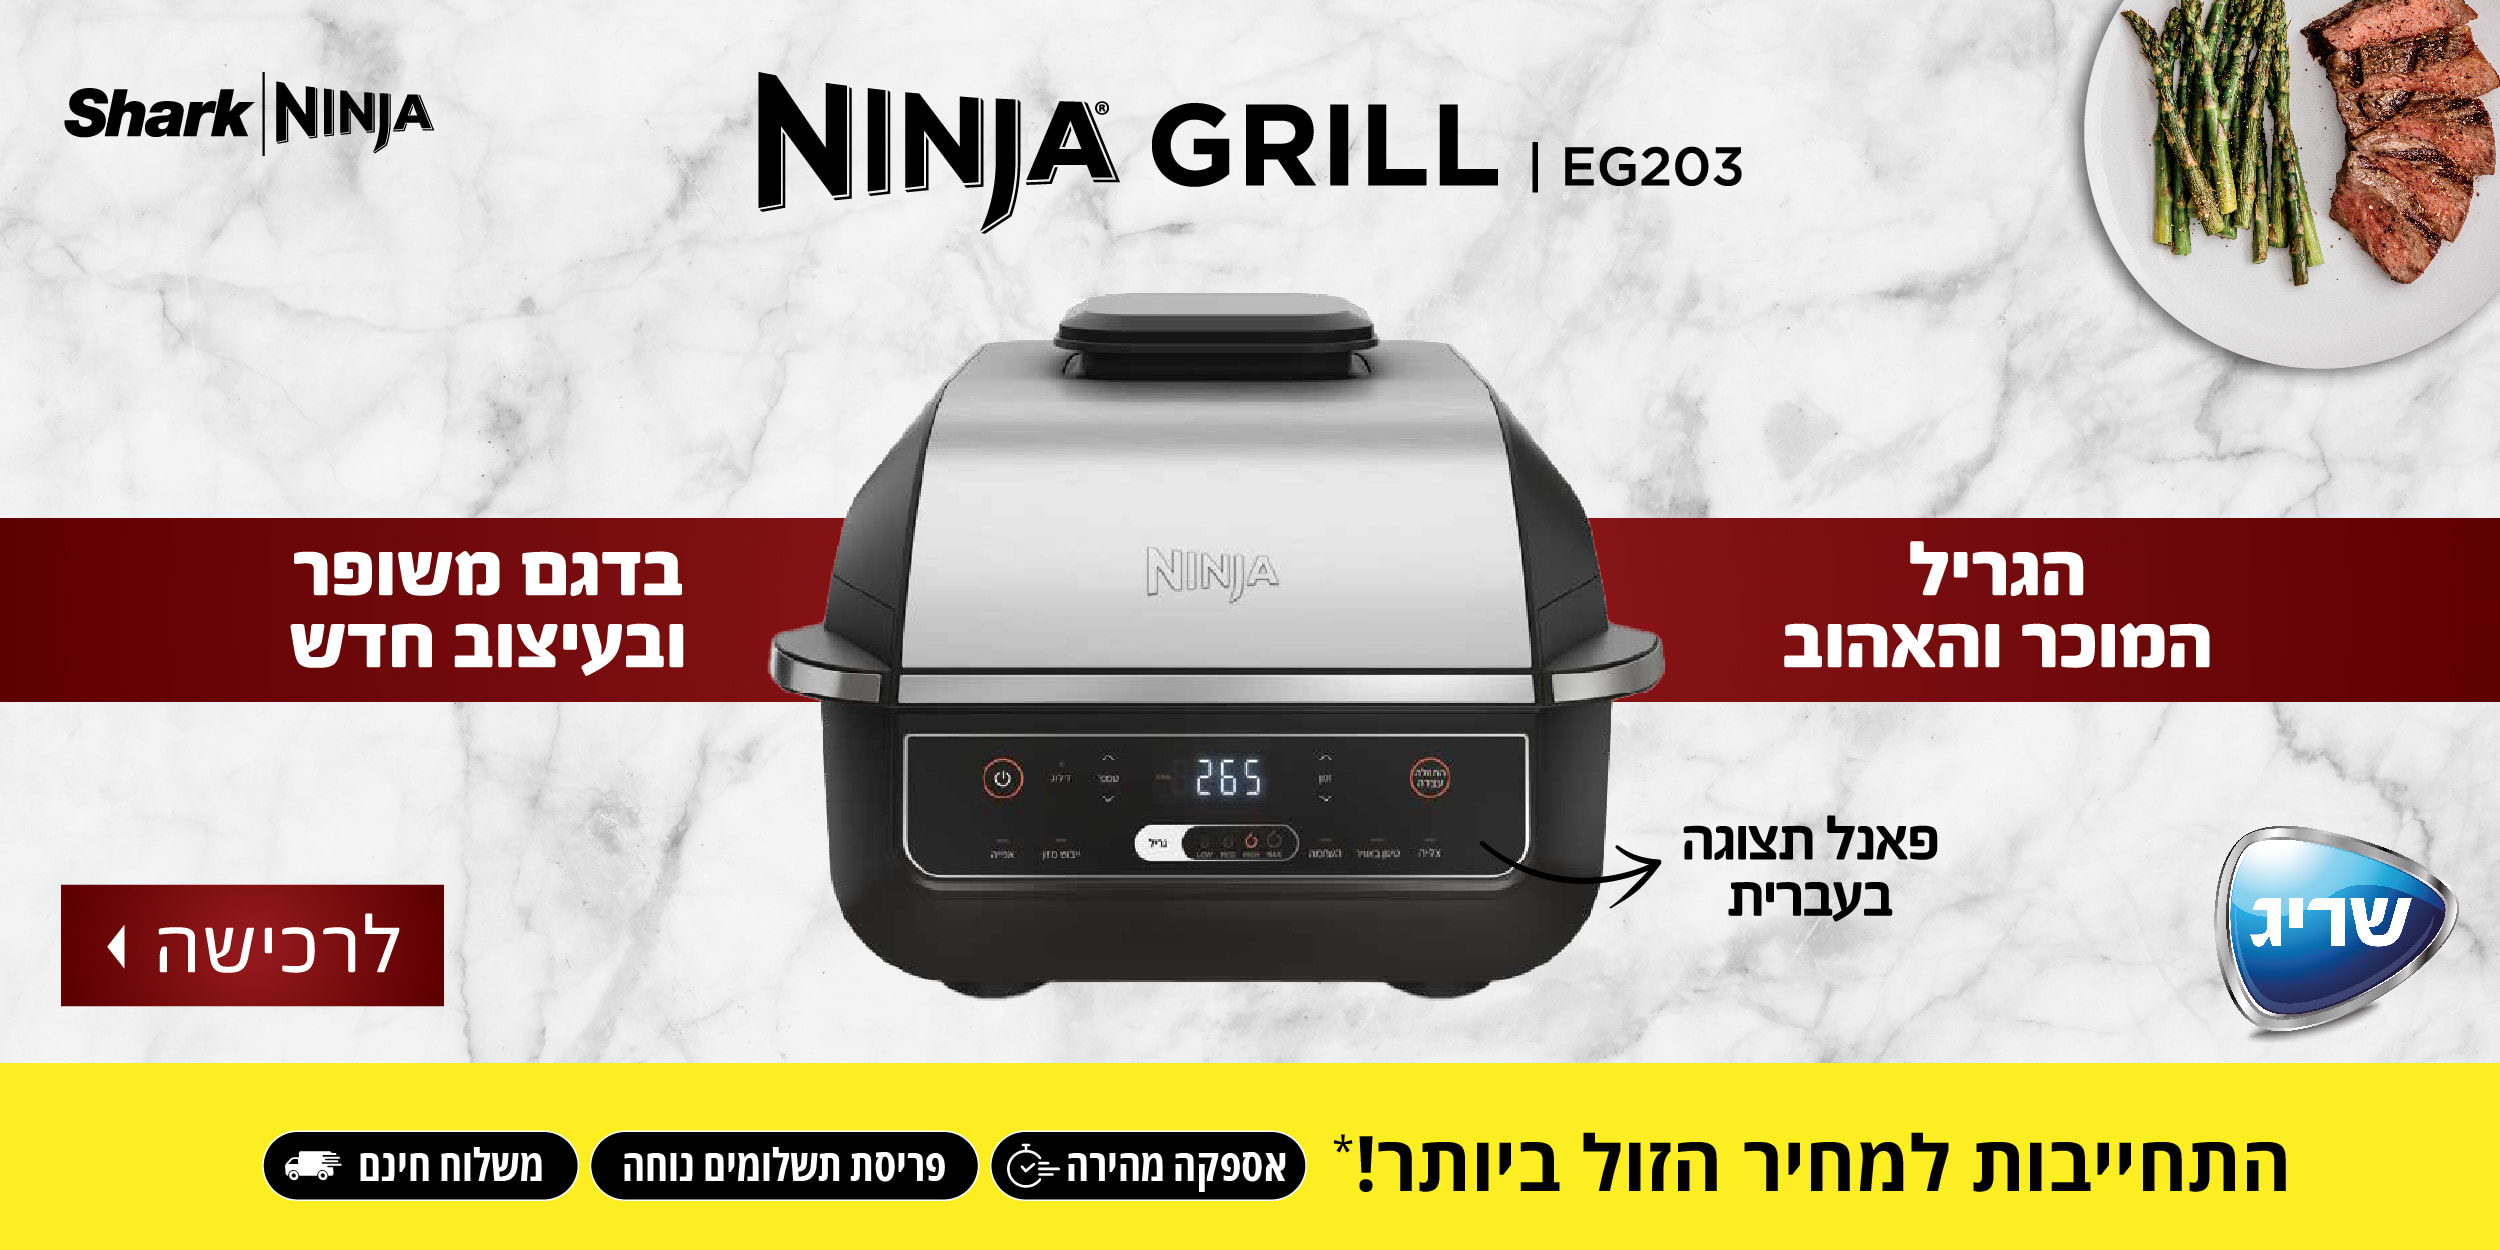 NINJA GRILL EG203 הגריל המוכר והאהוב בדגם משופר ובעיצוב חדש, פאנל תצוגה בעברית. התחייבות למחיר הזול ביותר! אספקה מהירה, פריסת תשלומים נוחה ומשלוח חינם.